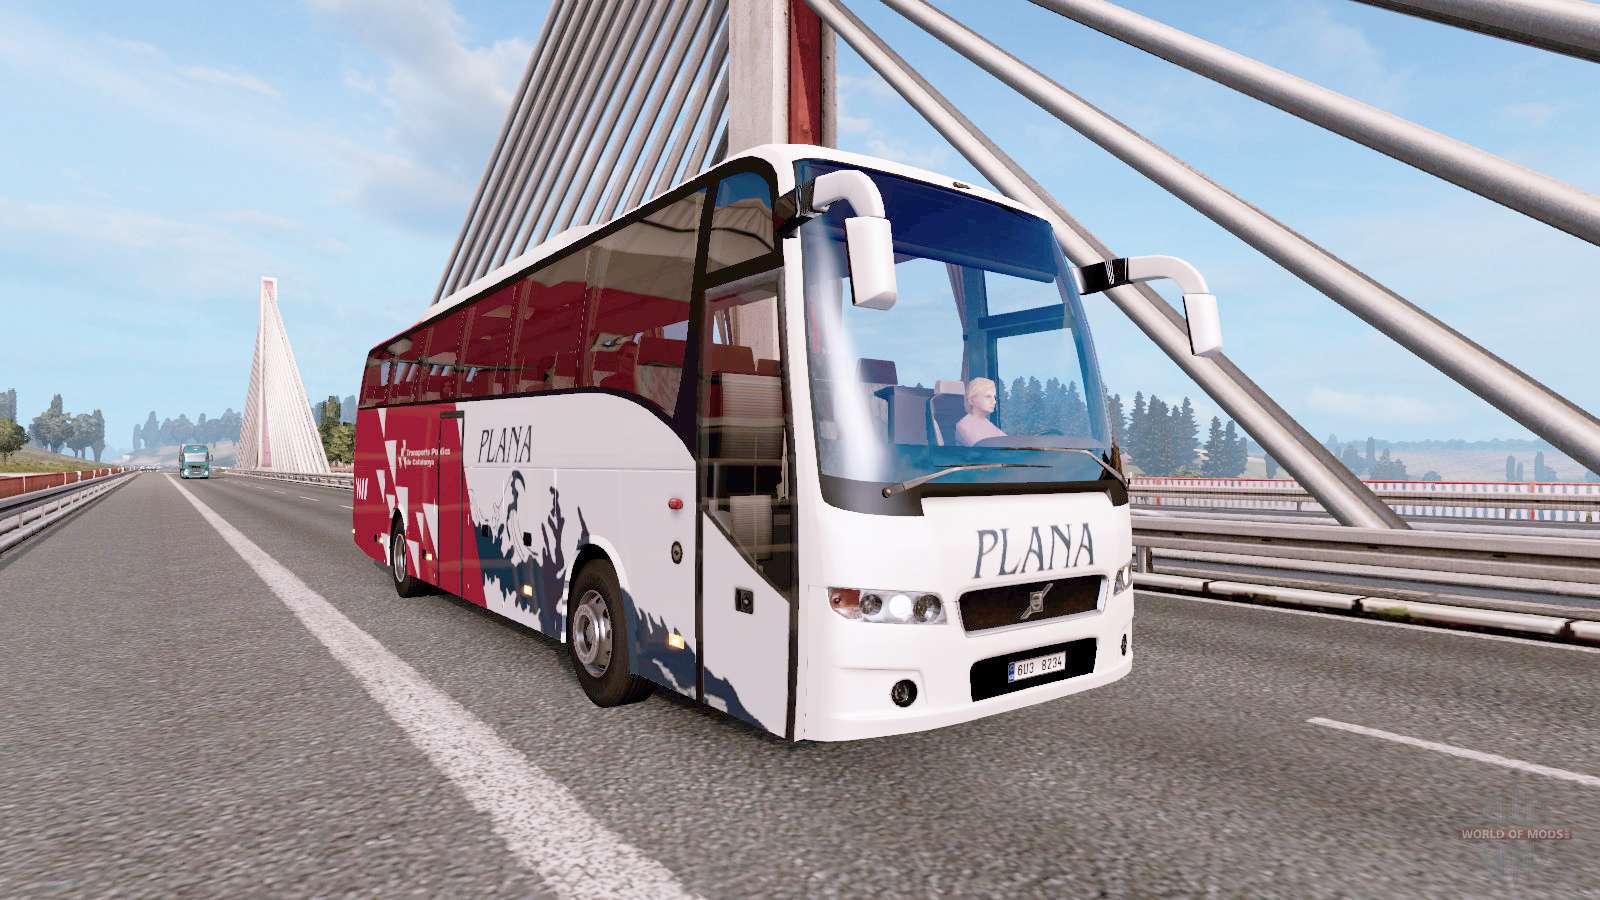 euro truck simulator 2 buses